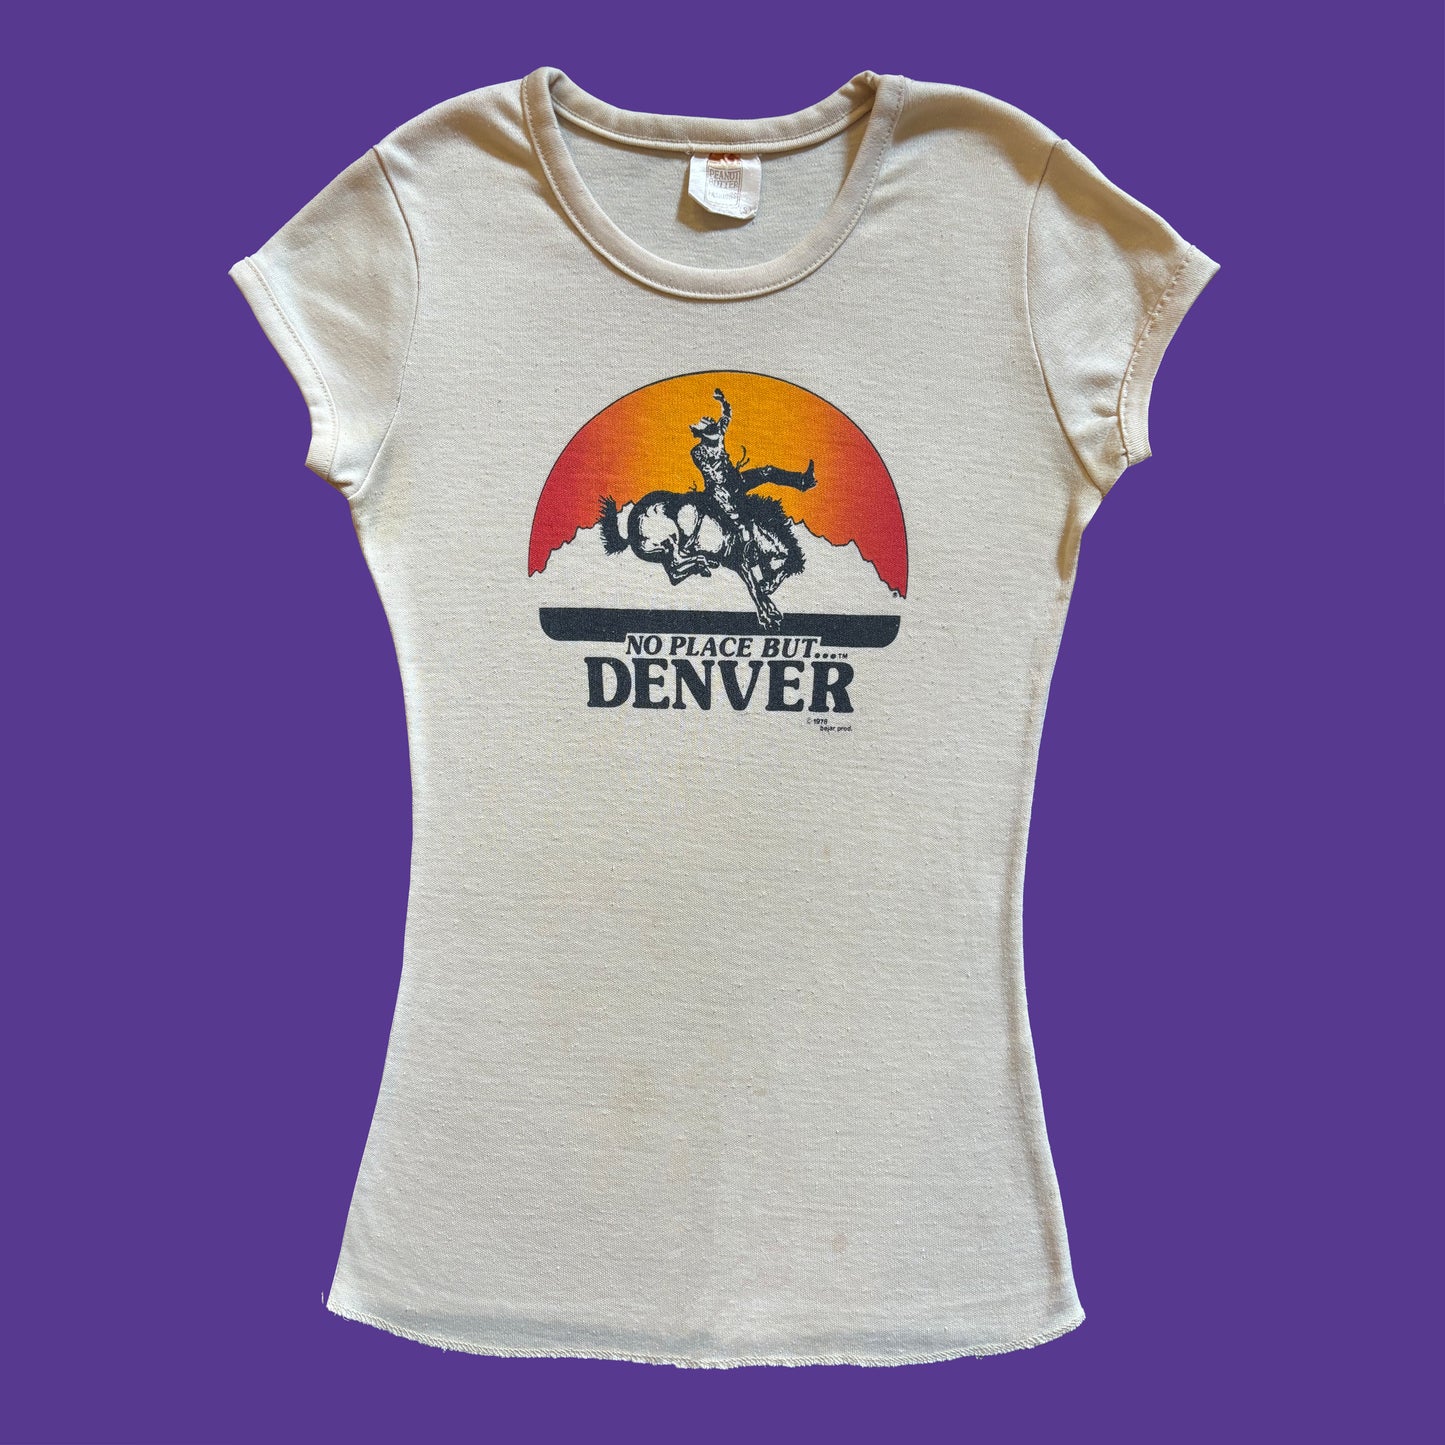 Vintage 1970s Tourist Destination T Shirt Denver Cowboy